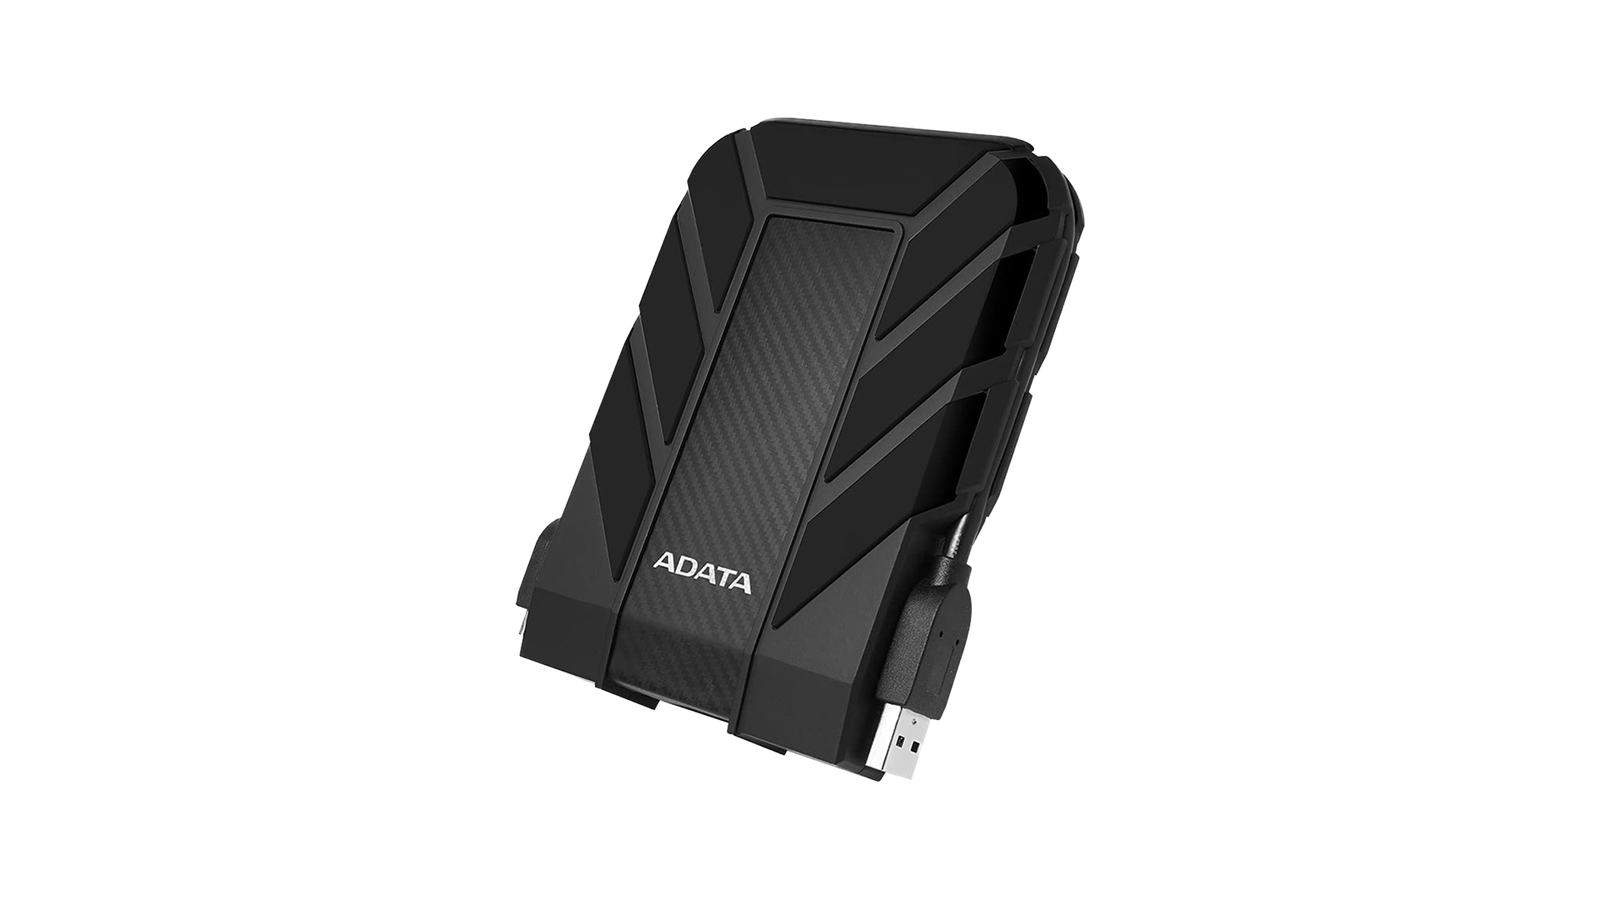 ADATA HD710 Pro rugged external hard drive - Best external hard drive for outdoors